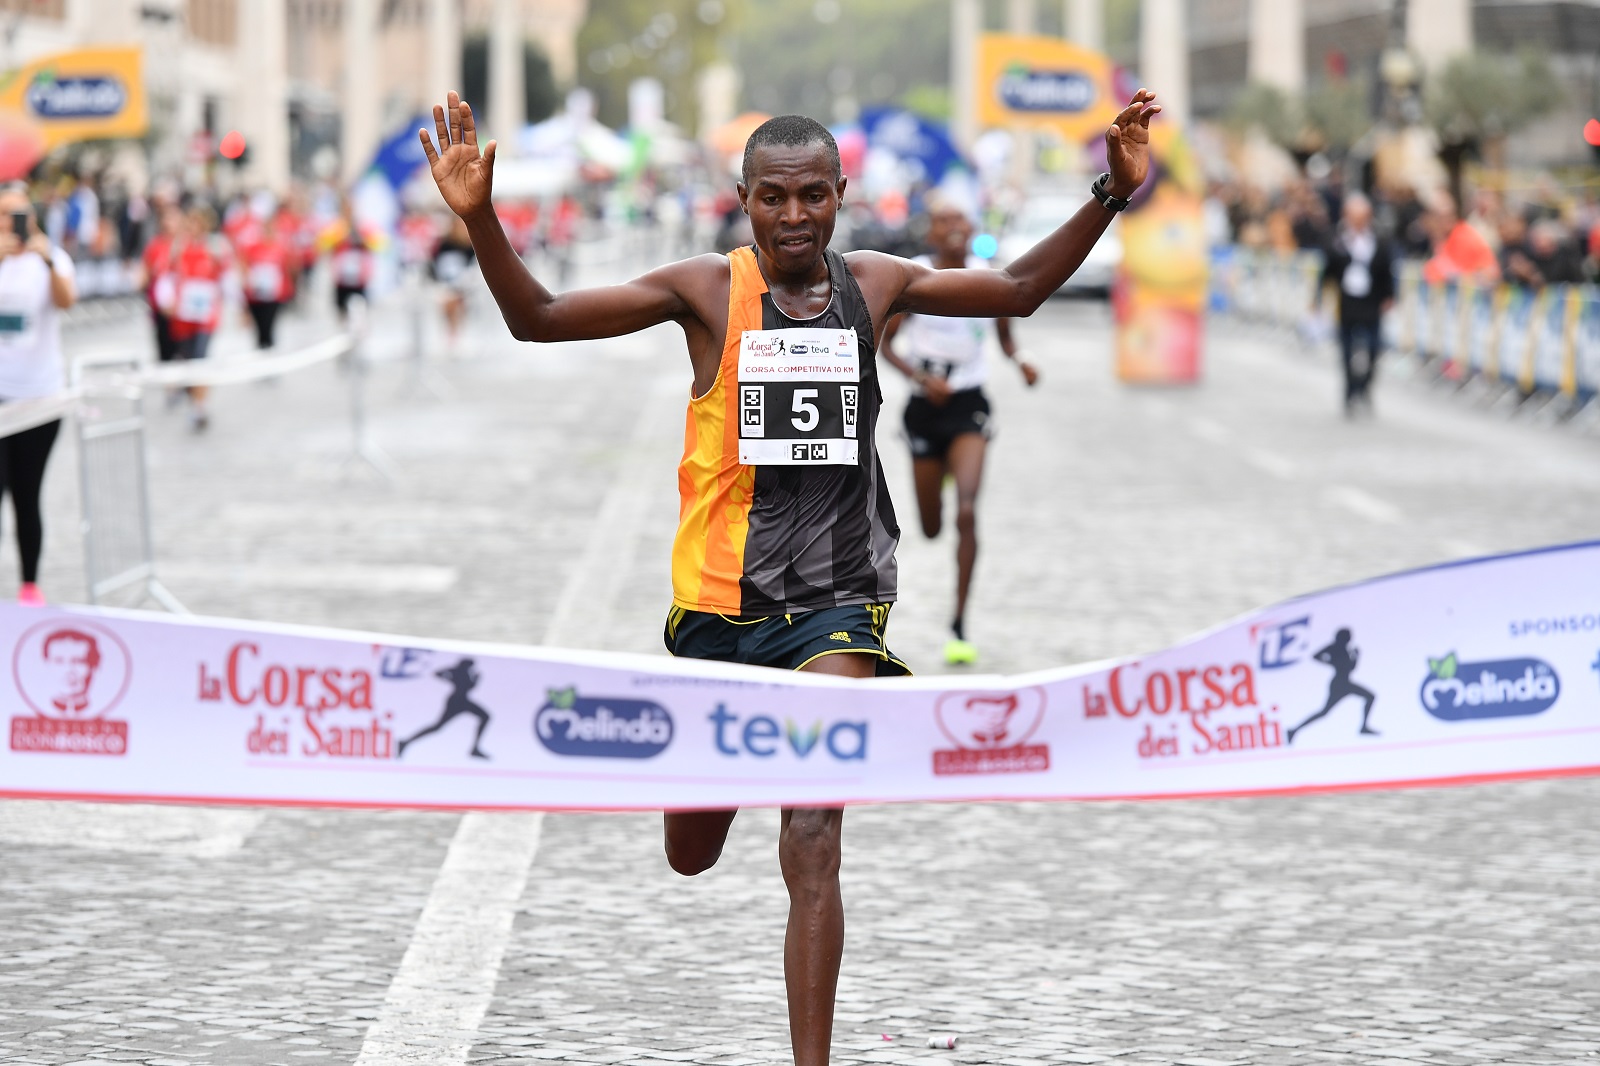 Corsa dei santi Il vincitore 2019 James Mburugu